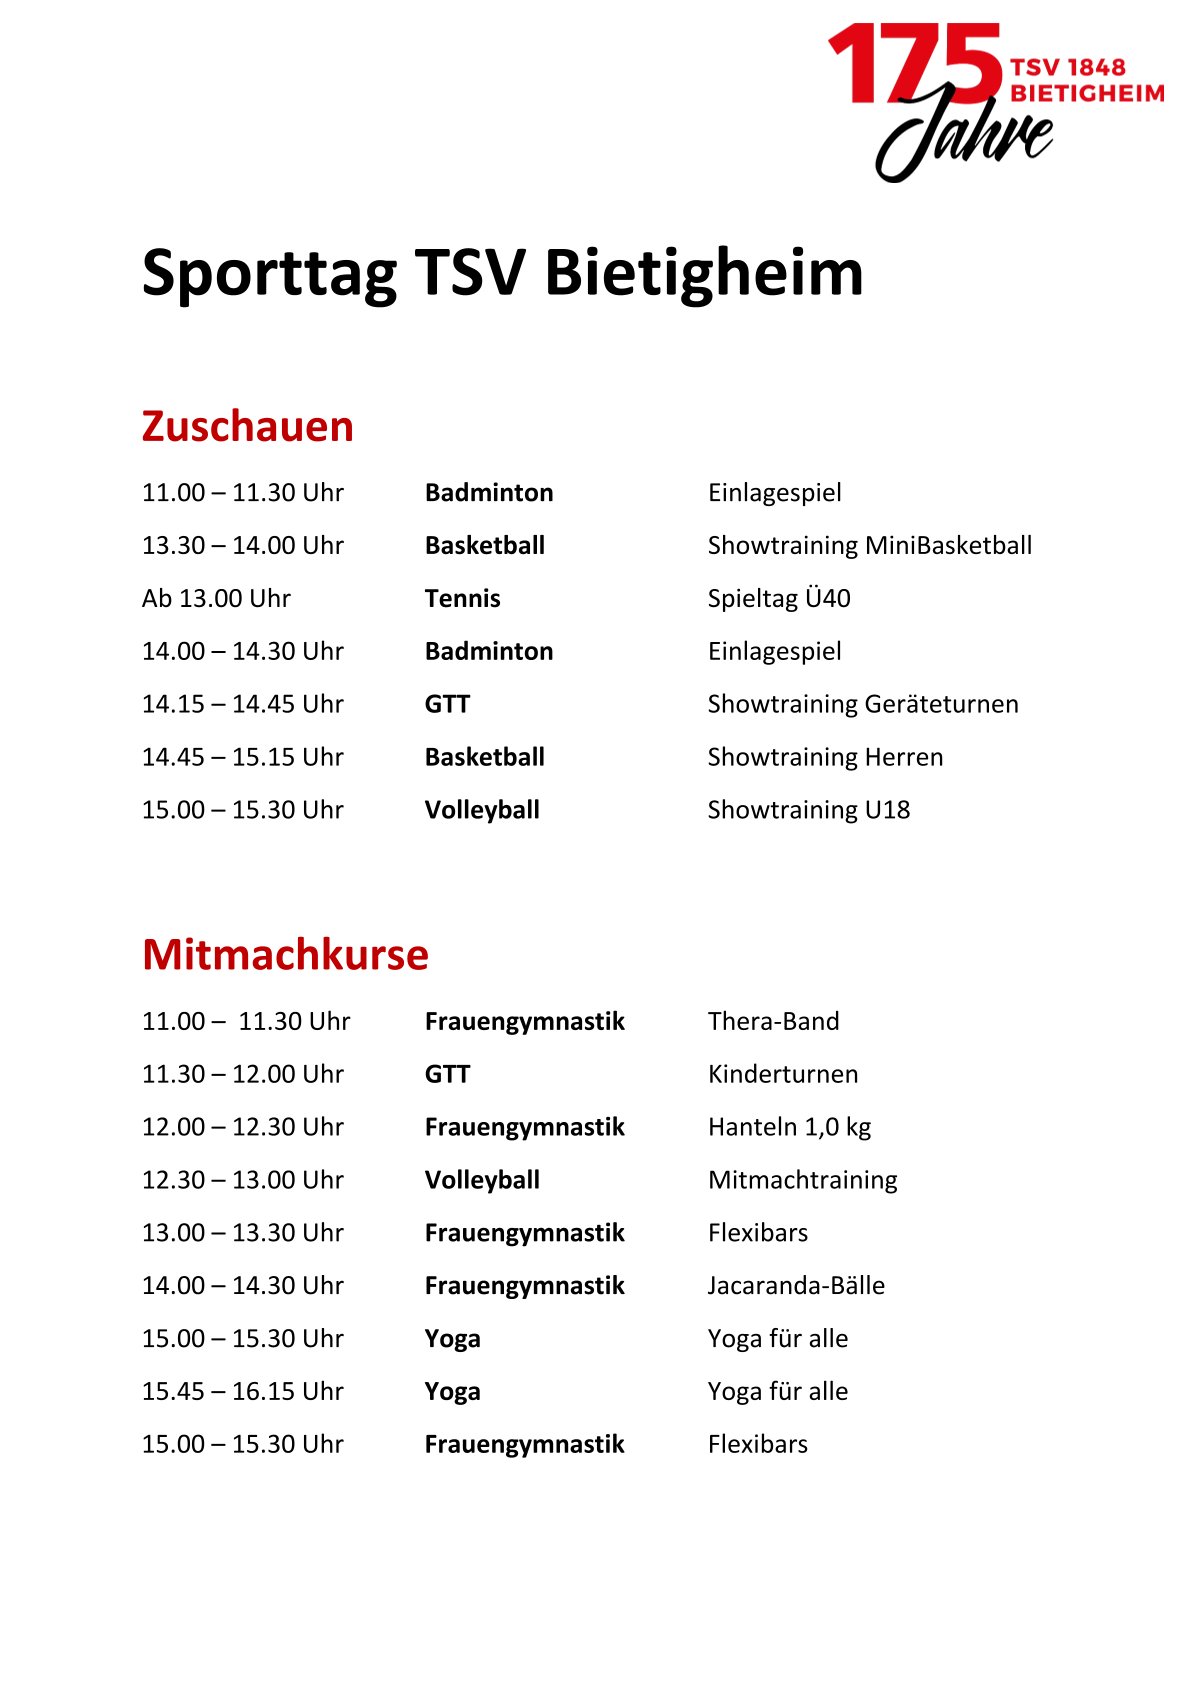 Zeitplan_Sporttag_Zuschauen